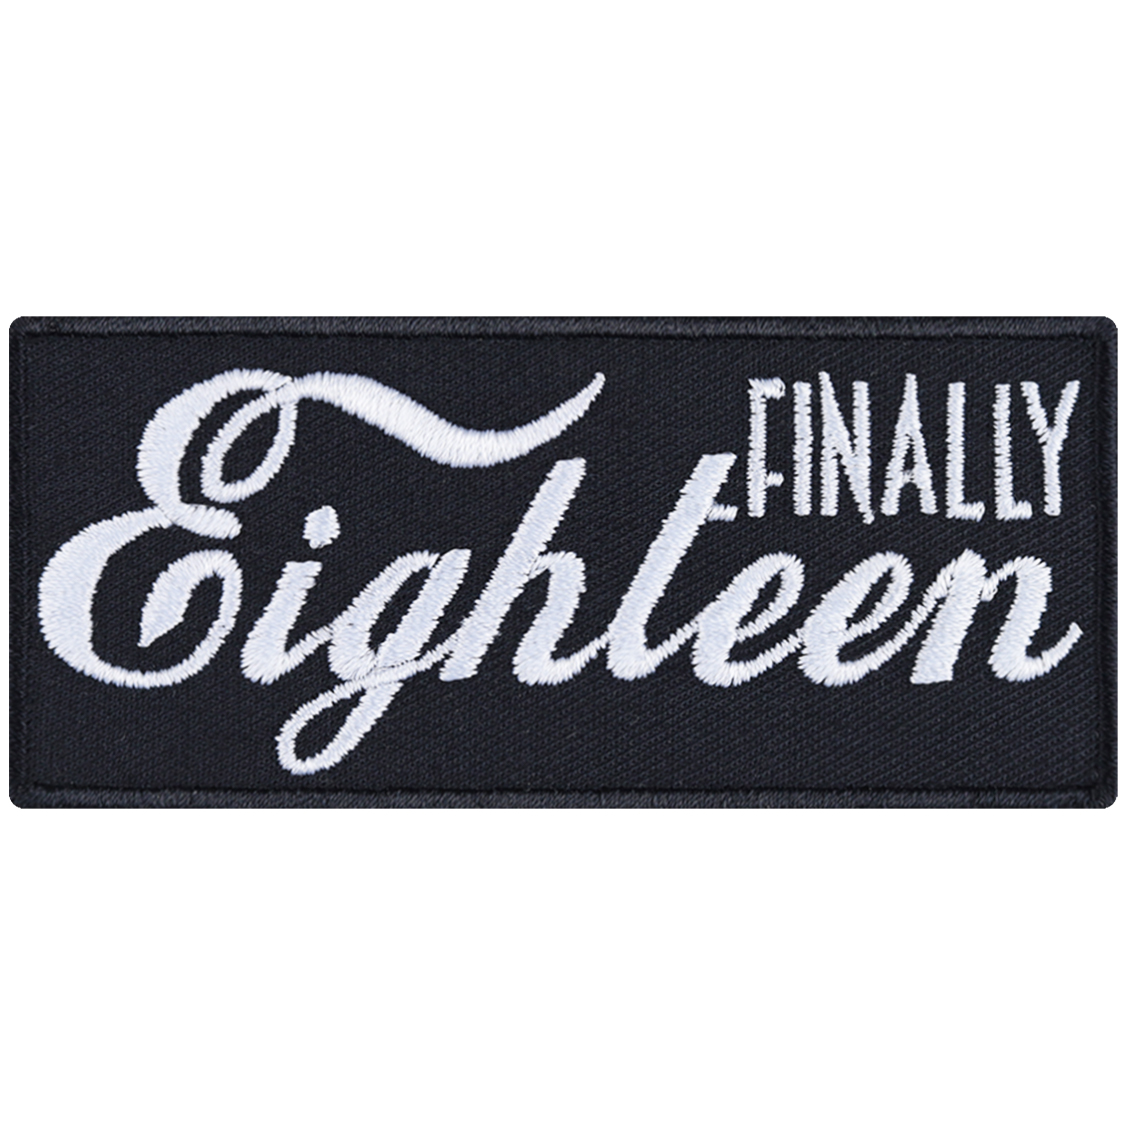 Finally eighteen - Patch